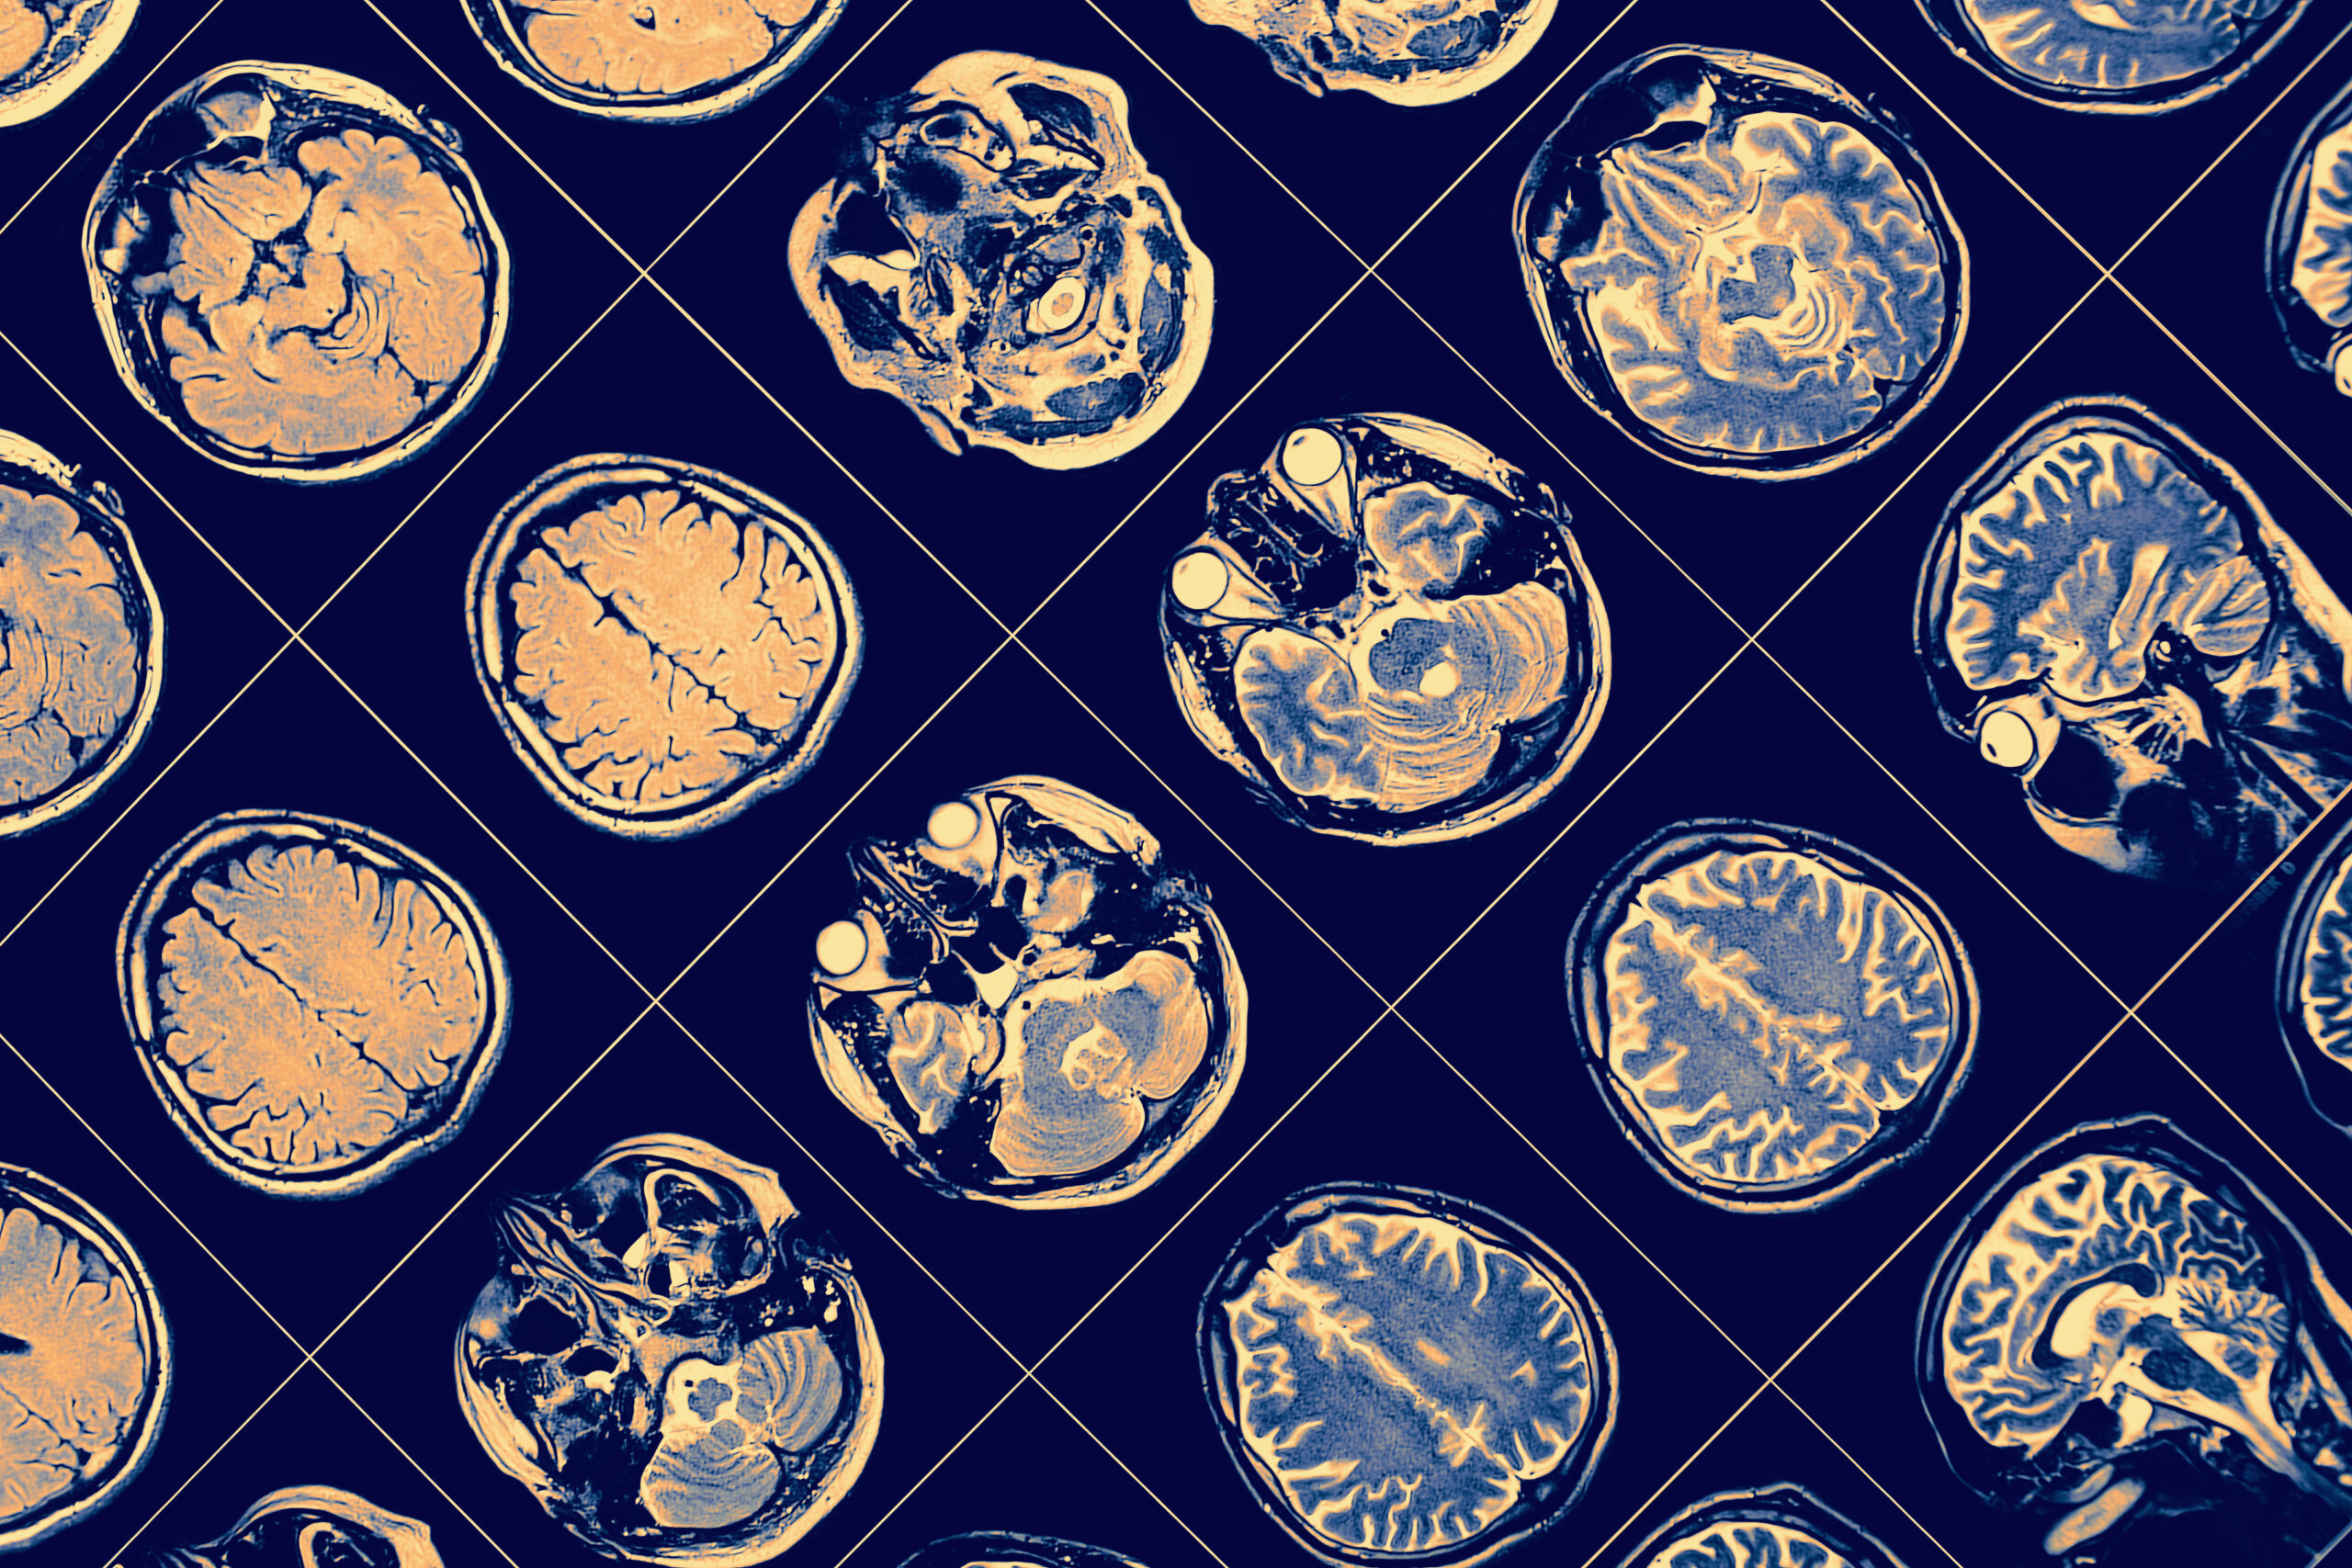 Estudo descobre como bandana pode detectar os primeiros sinais de Alzheimer